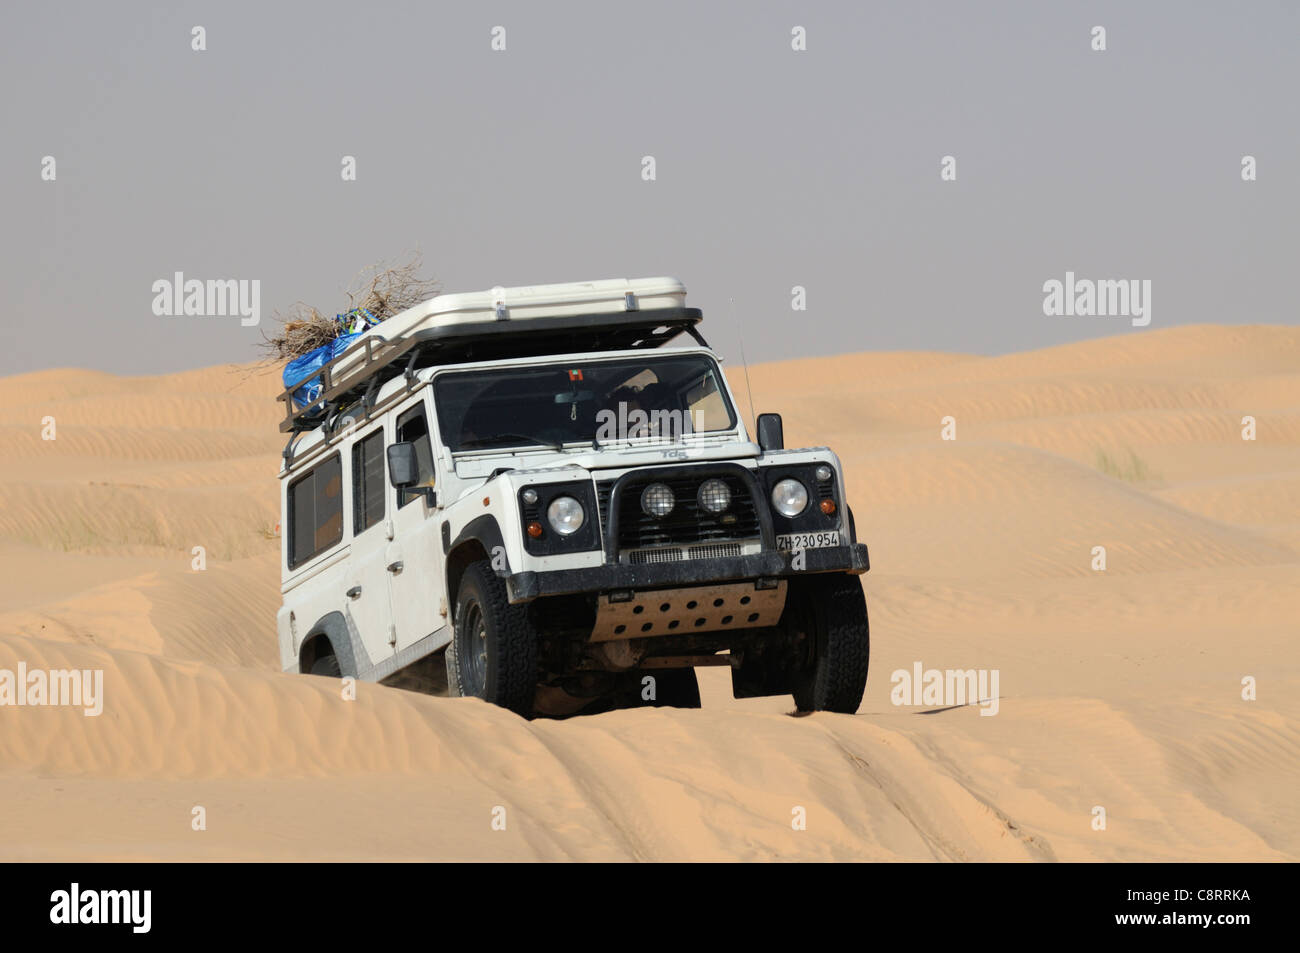 Afrika, Tunesien, nr. Tembaine. Land Rover Defender 110 TD5 Station Wagon auf seinem Weg durch eine Strecke von Sanddünen nahe... Stockfoto